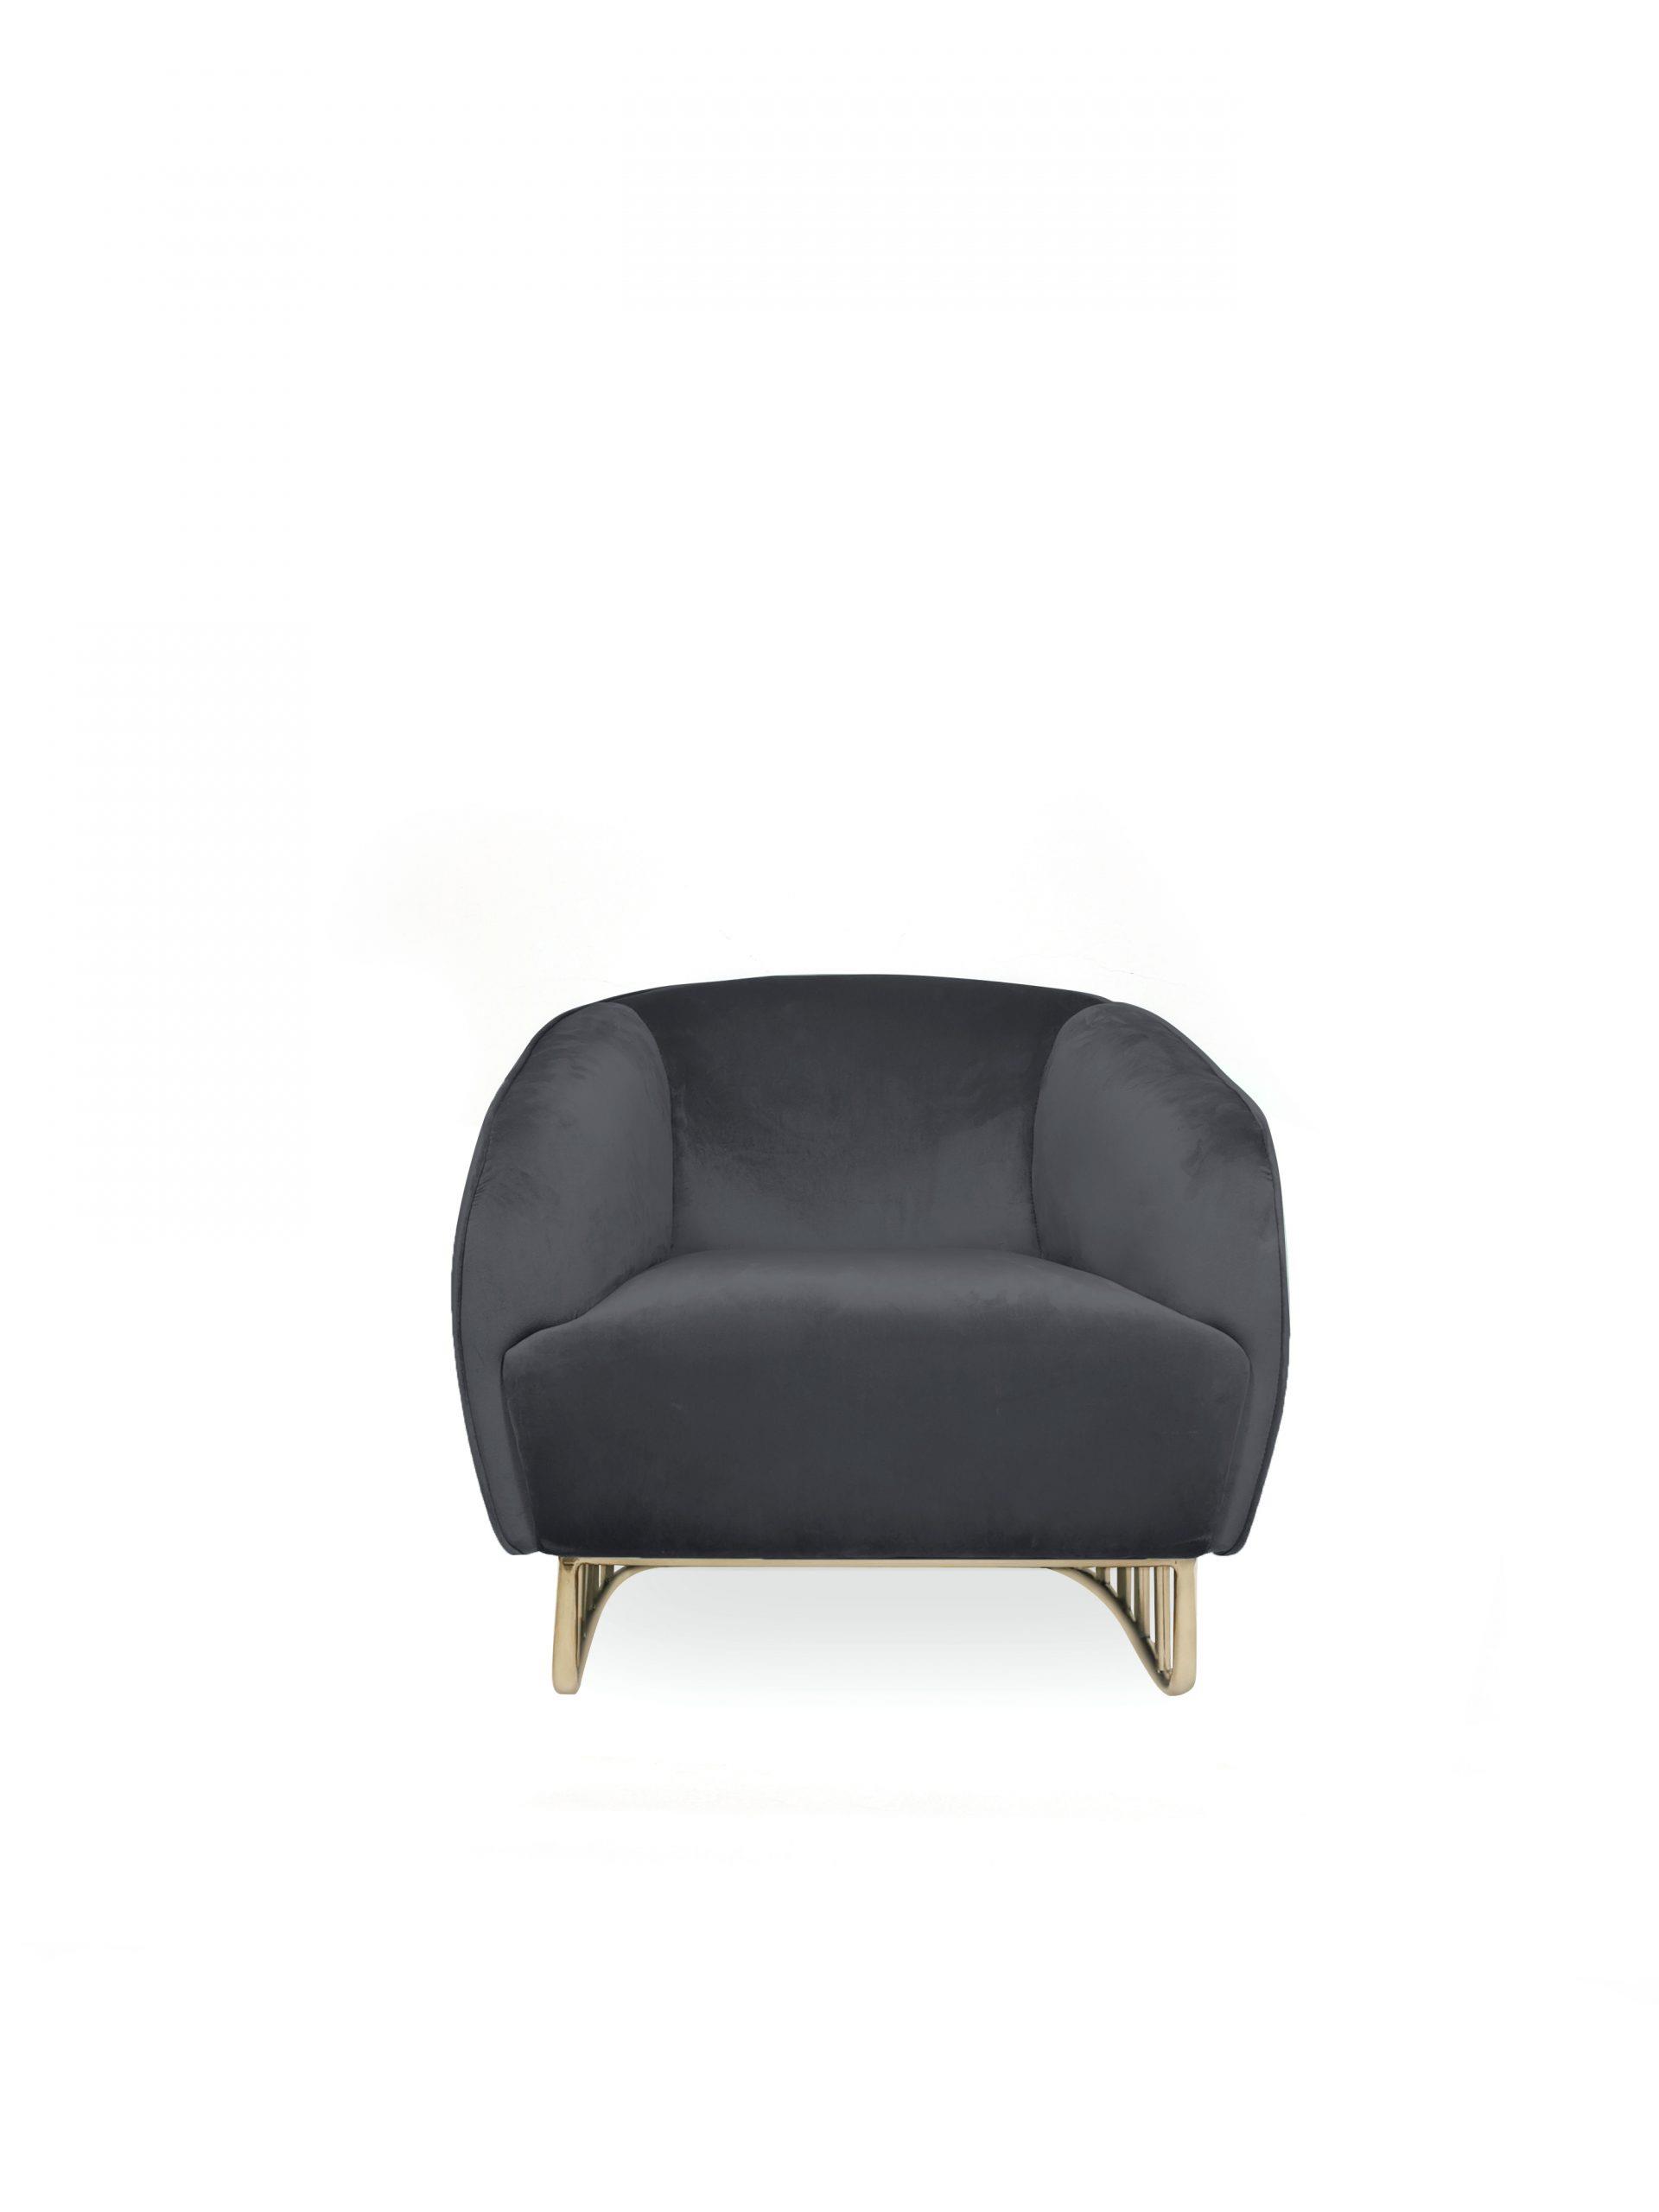 כורסא לבית מעוצבת דגם אושן שחור